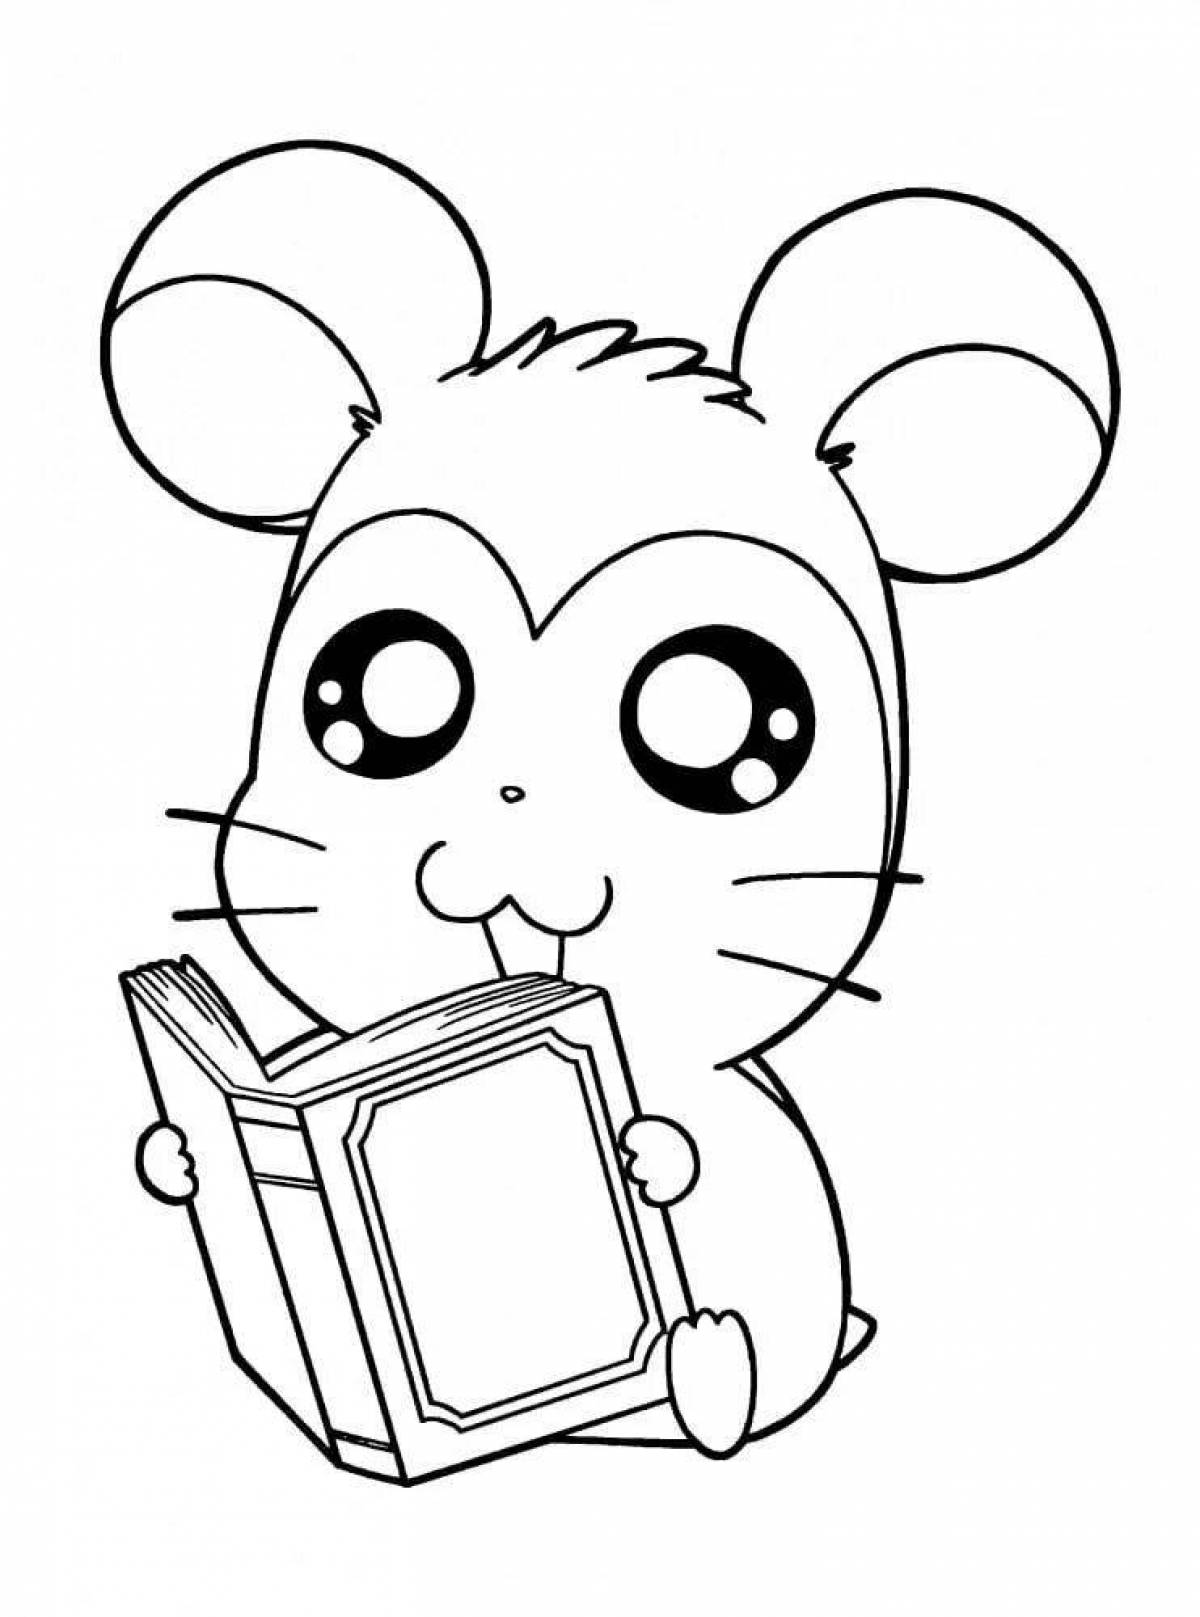 Hamster fun coloring book